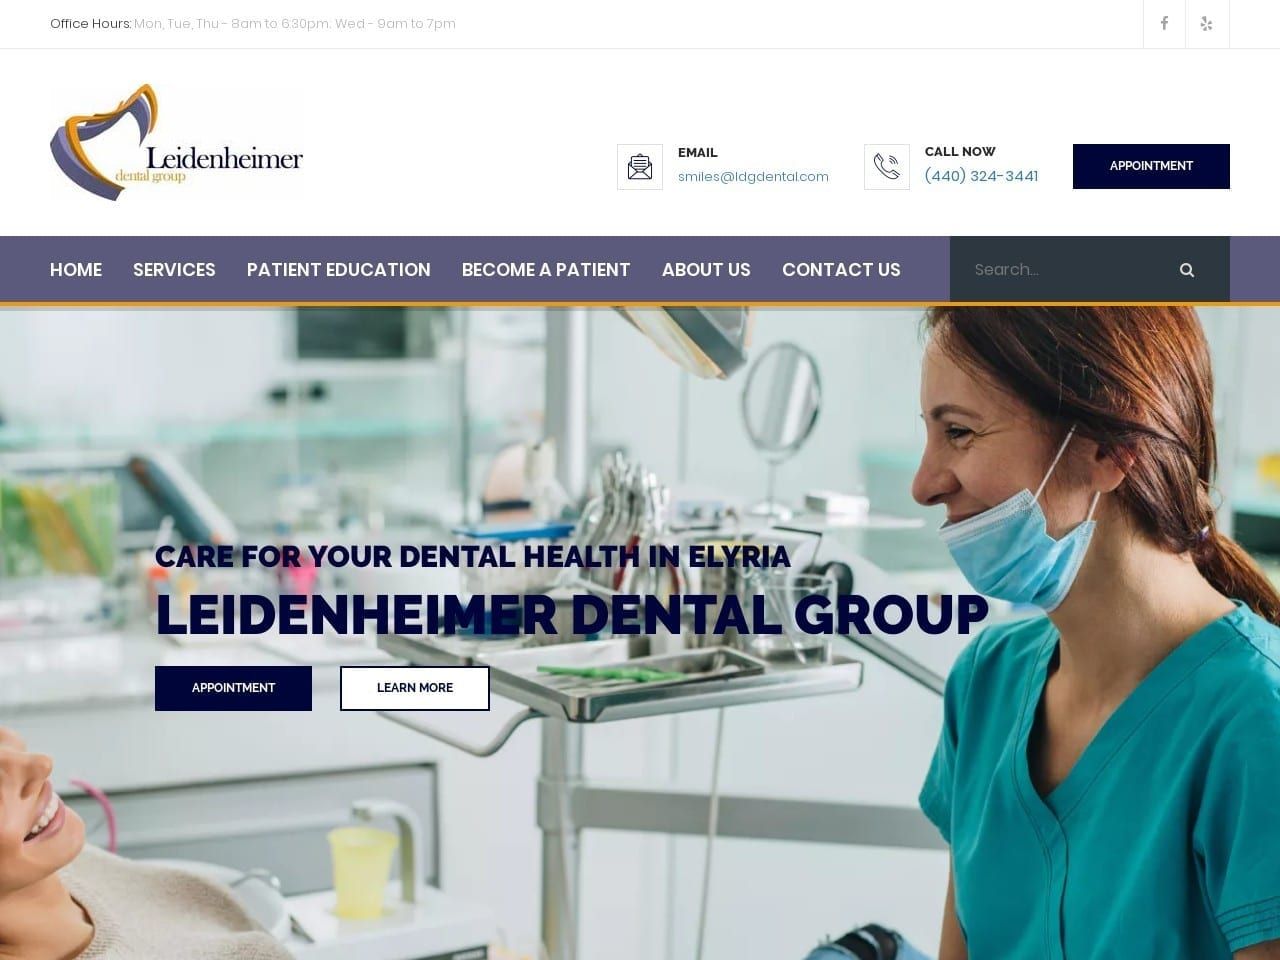 Leidenheimer Dental Group Website Screenshot from ldgdental.com